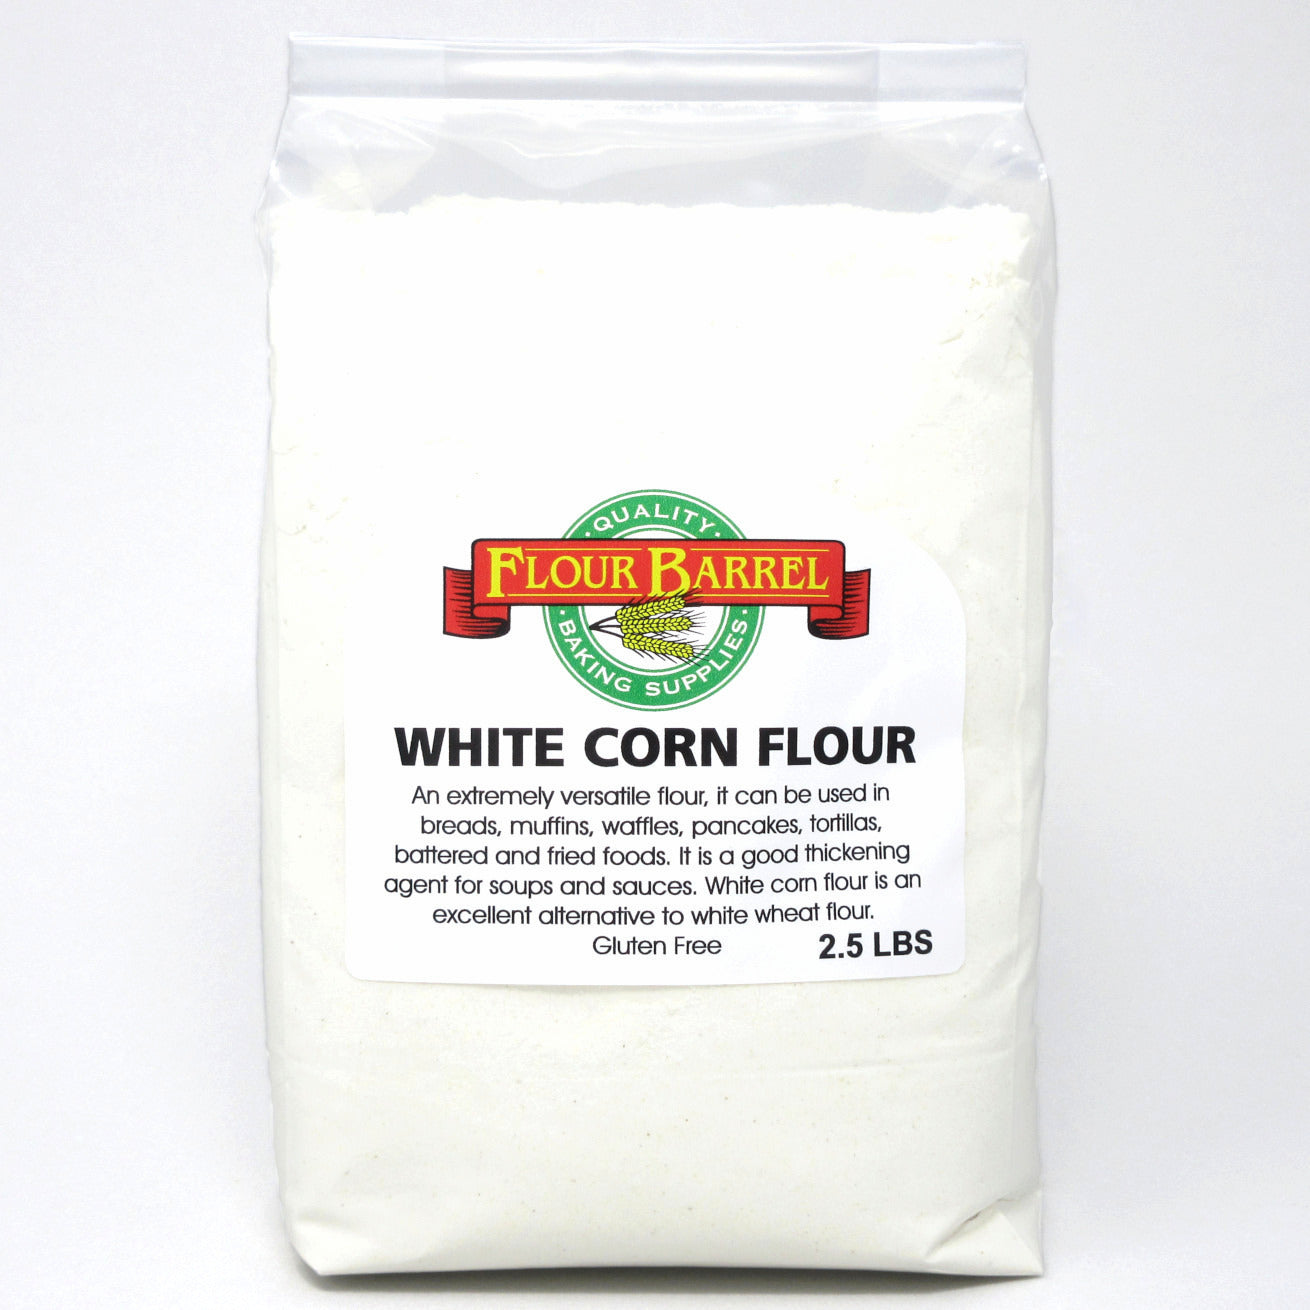 Flour Barrel product image - White Corn Flour